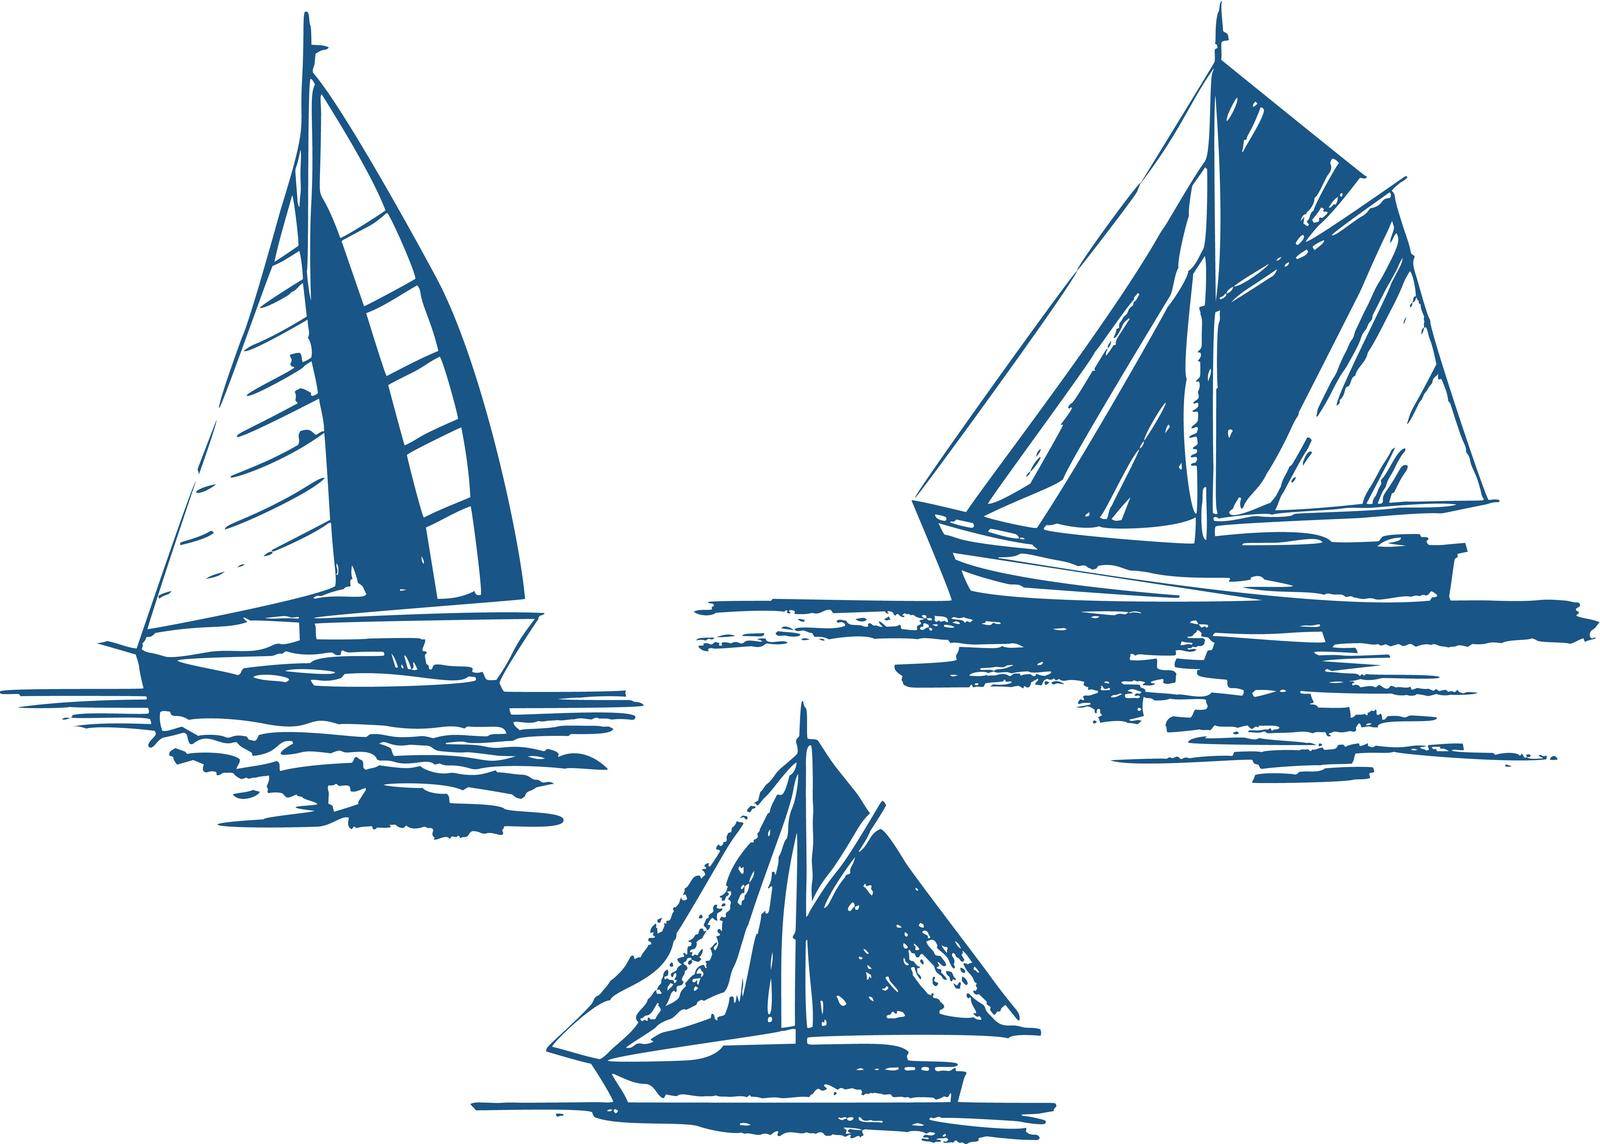 Sailing yachts bundle hand-drawn ink sketch. Set of vector ships